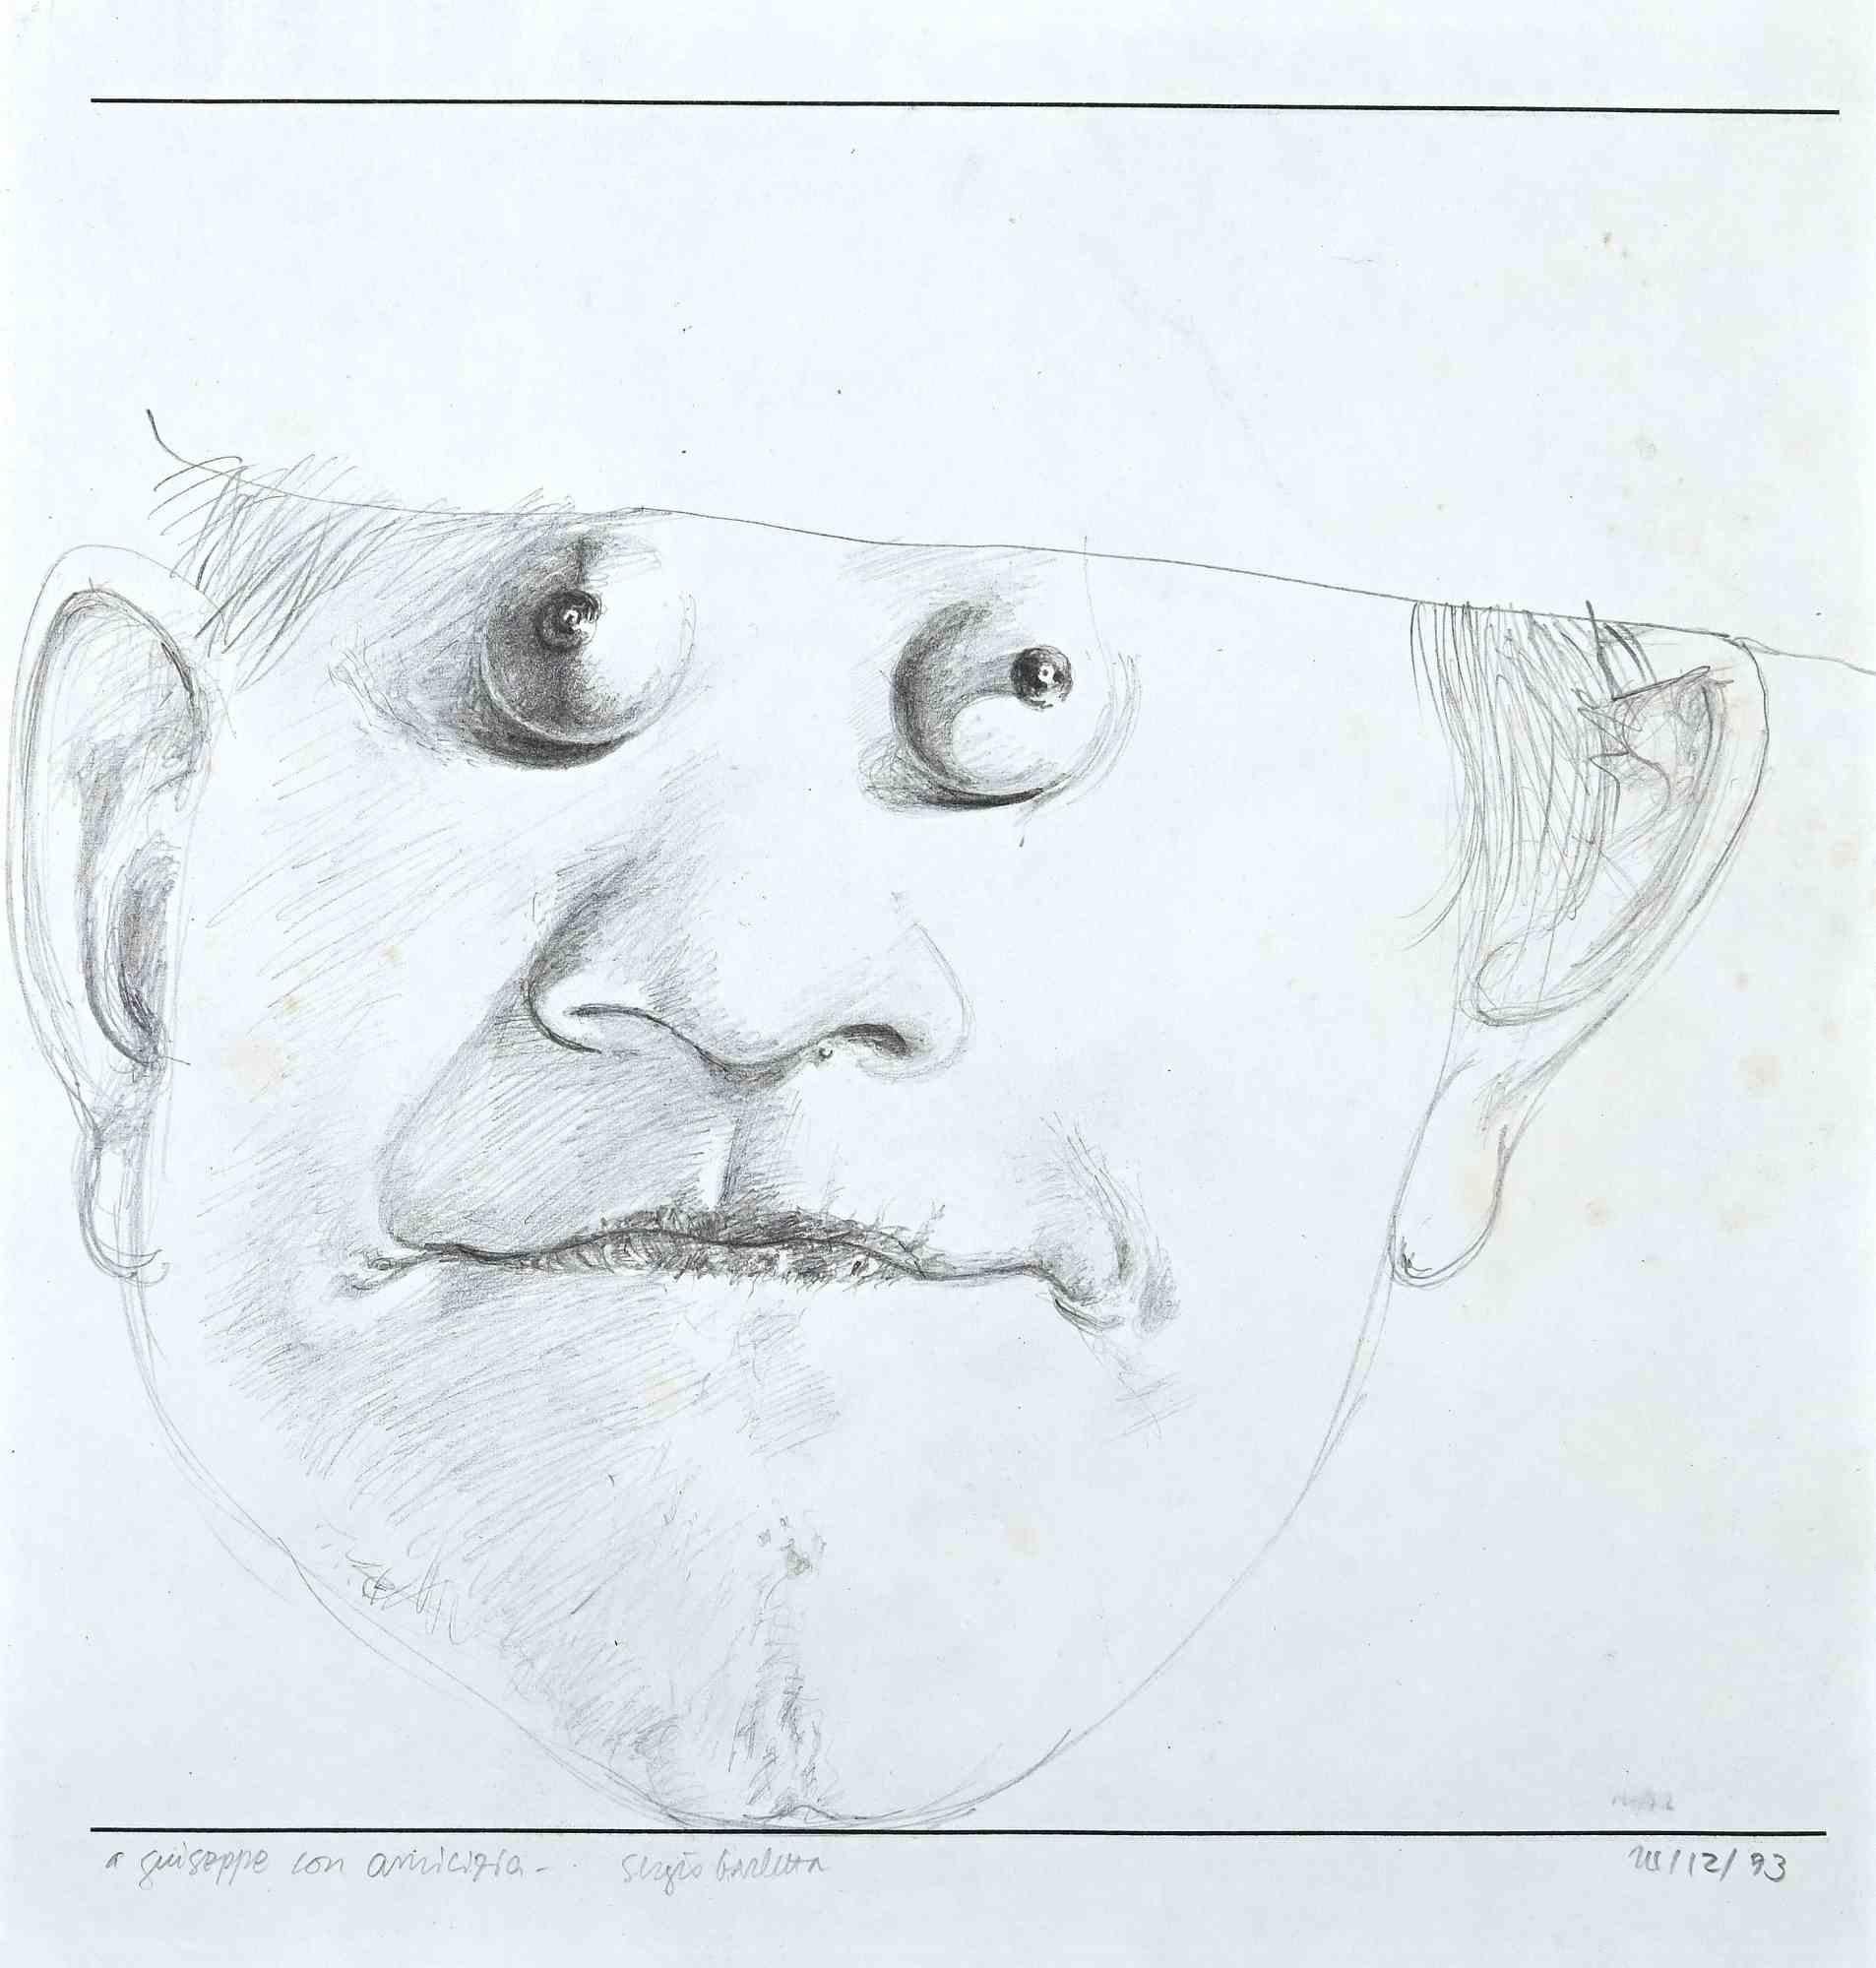 Das Porträt ist eine Original-Bleistiftzeichnung auf Papier von Sergio Barletta aus den 1993er Jahren.

Unter guten Bedingungen.

Dieses Kunstwerk stellt das Porträt eines Mannes dar. Unten am Rand befindet sich eine Widmung: An Giuseppe in